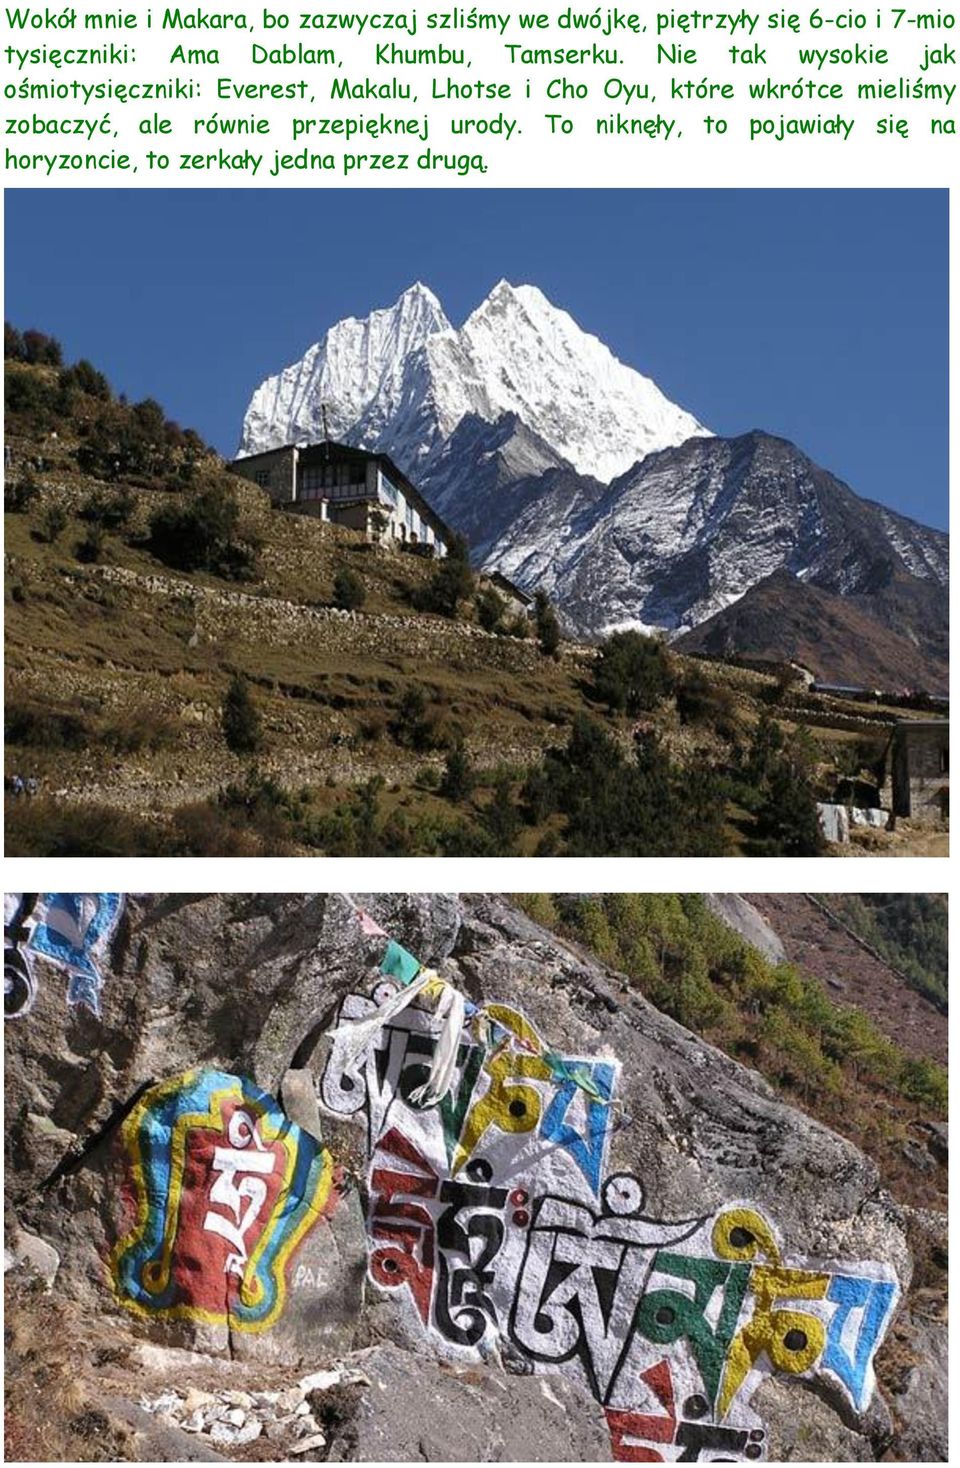 Nie tak wysokie jak ośmiotysięczniki: Everest, Makalu, Lhotse i Cho Oyu, które